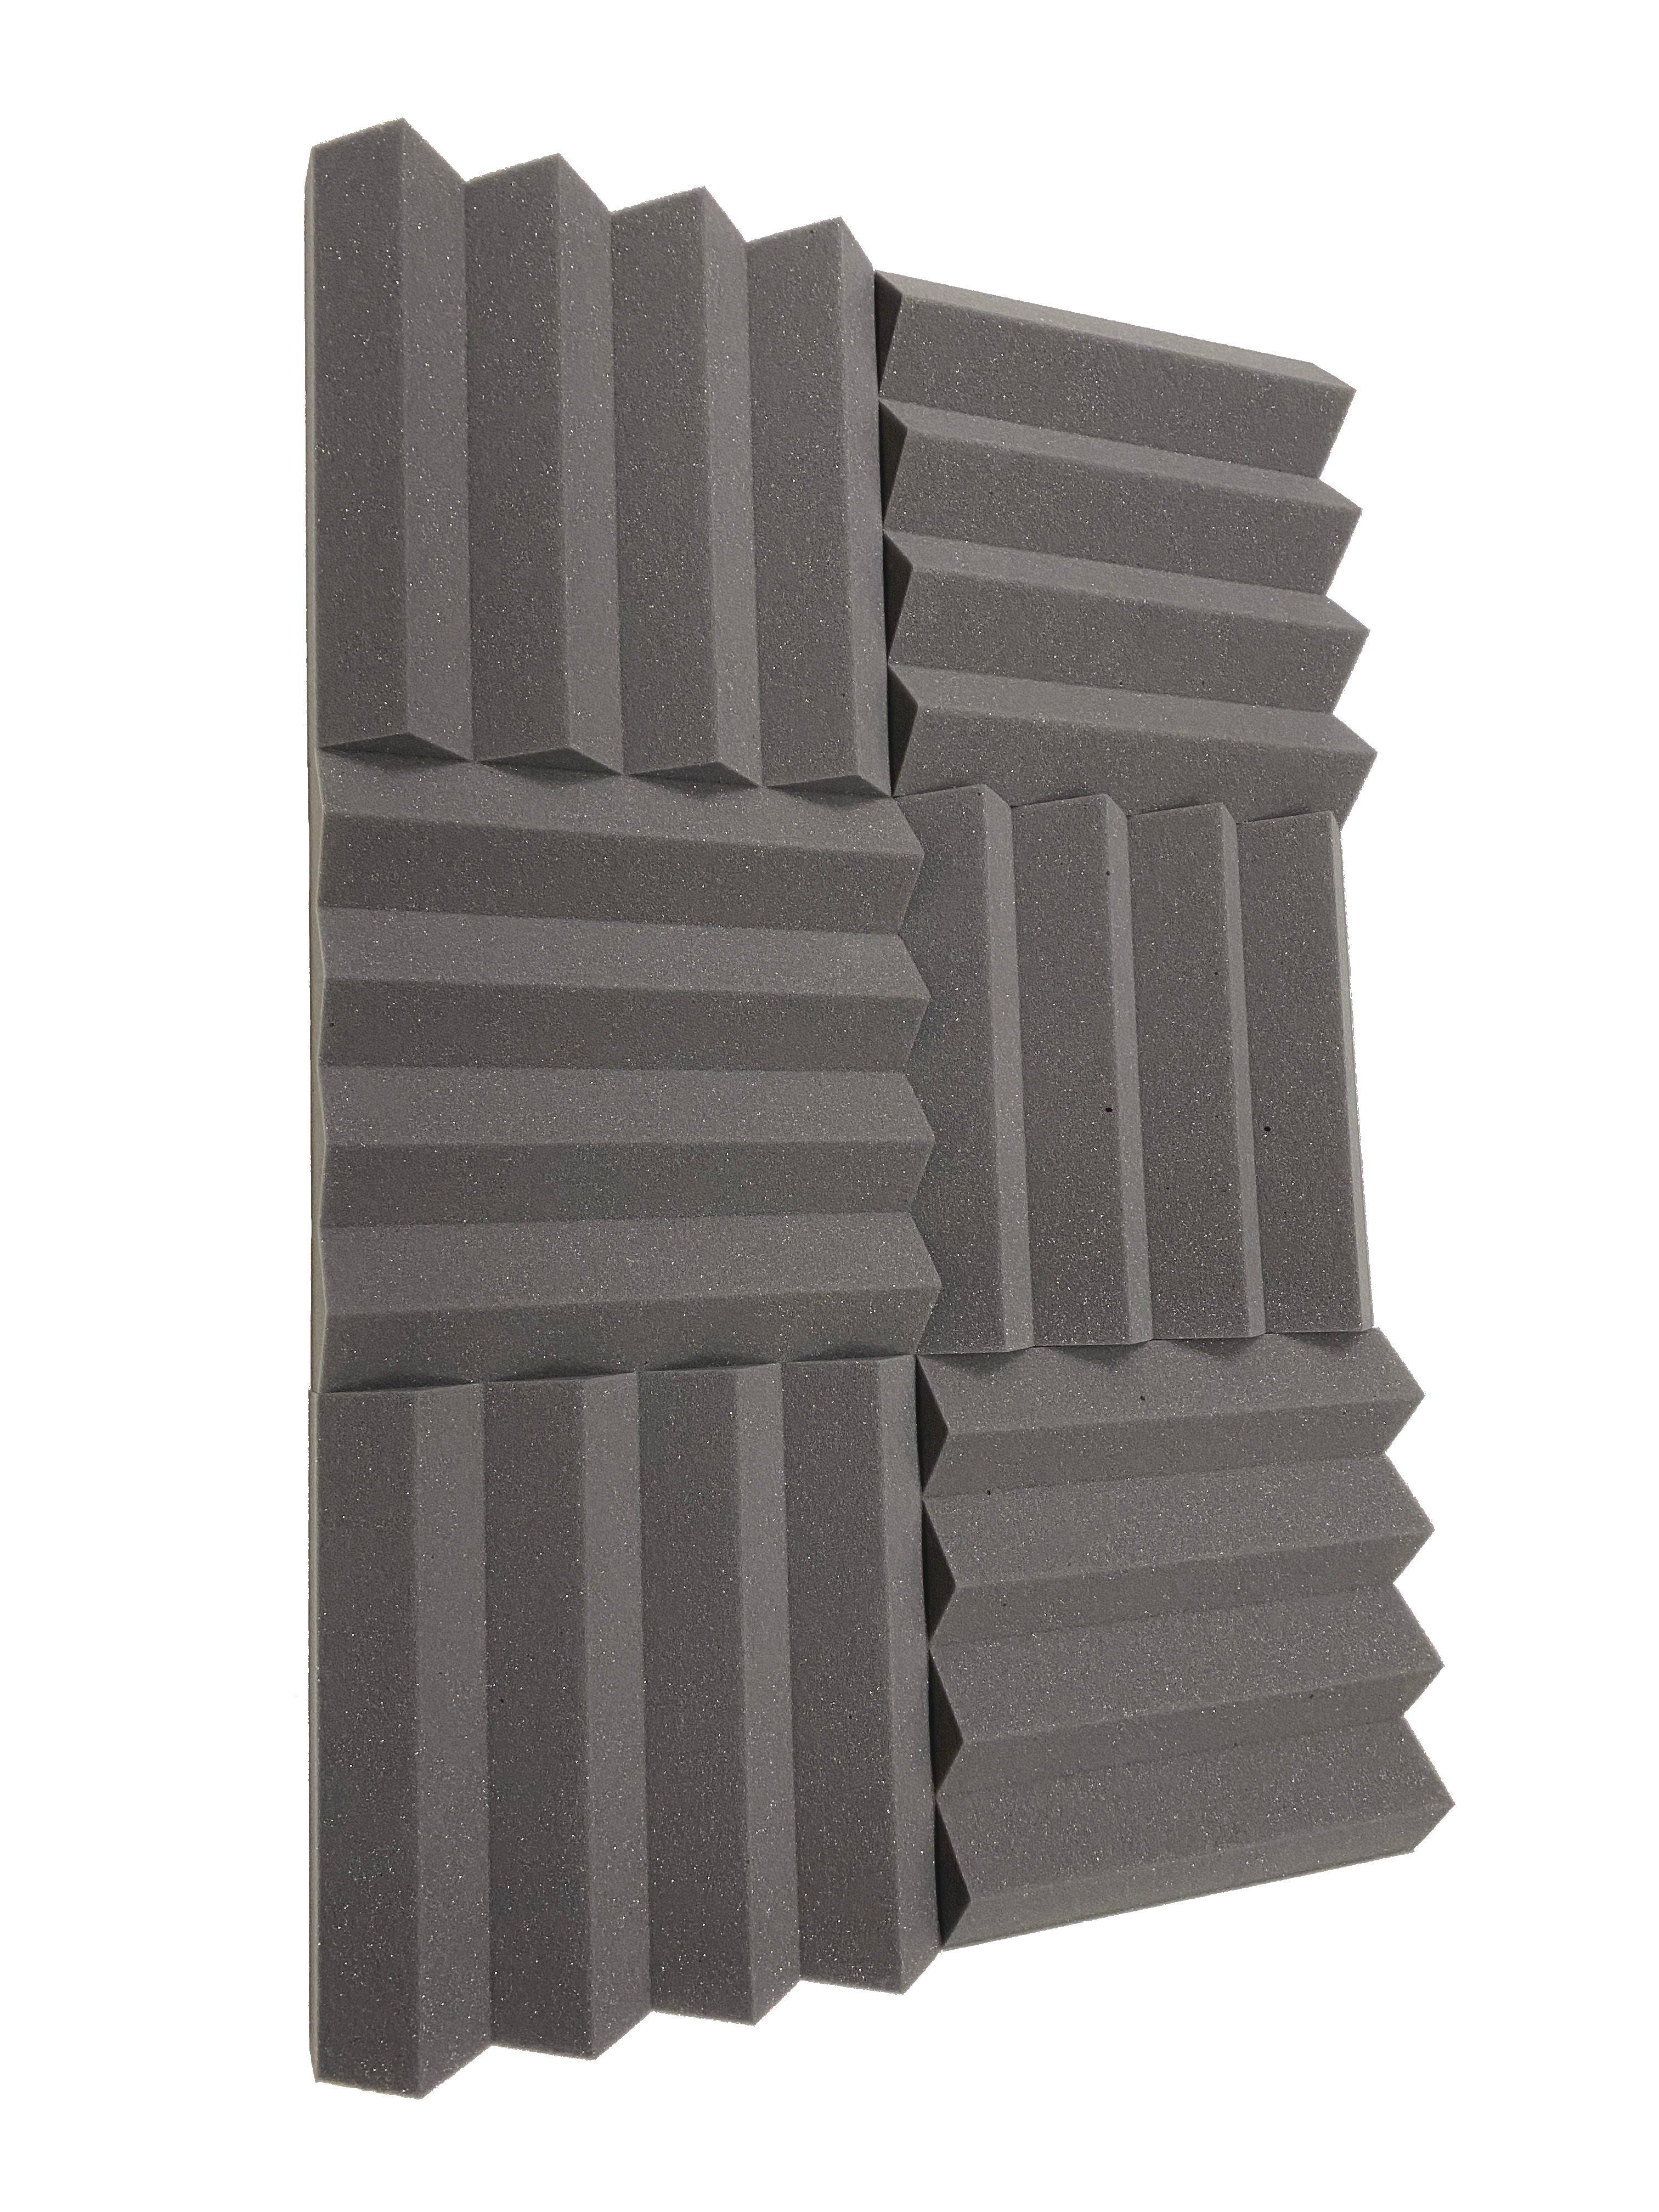 Kaufen mittelgrau Wedge PRO 12&quot; Acoustic Studio Foam Tile Pack - 24 Tiles, 2.2qm Coverage